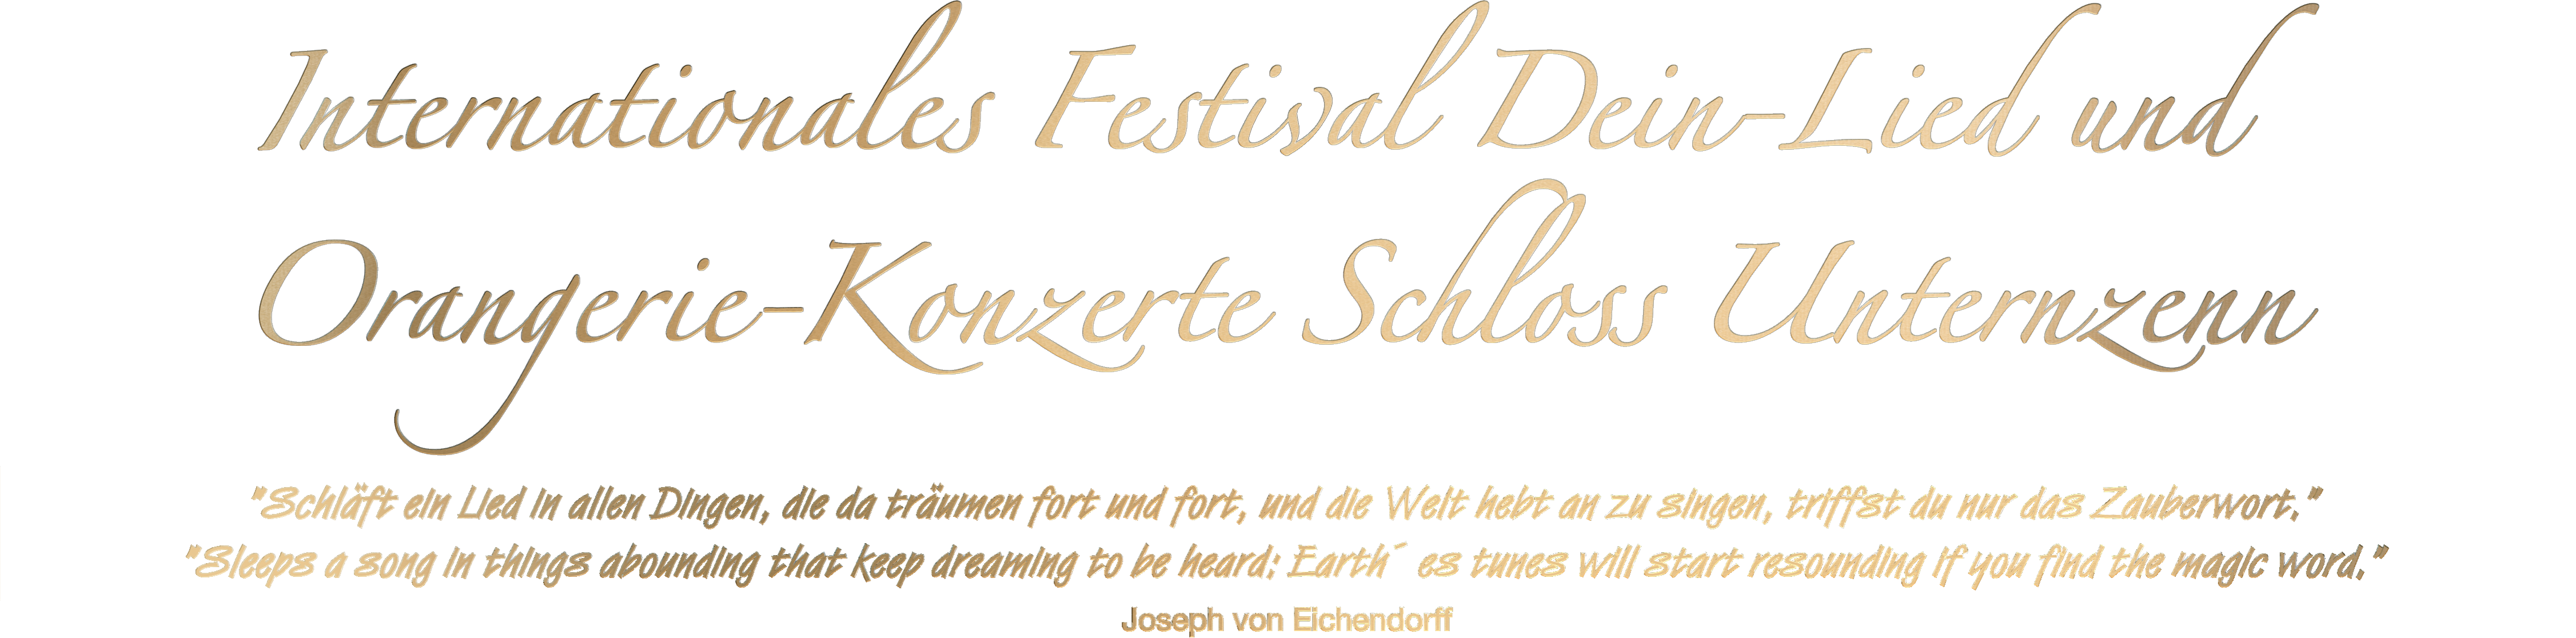 Internationales Festival Dein-Lied und Orangerie-Konzerte Schloss Unternzenn mit Zitat von Joseph von Eichendorff